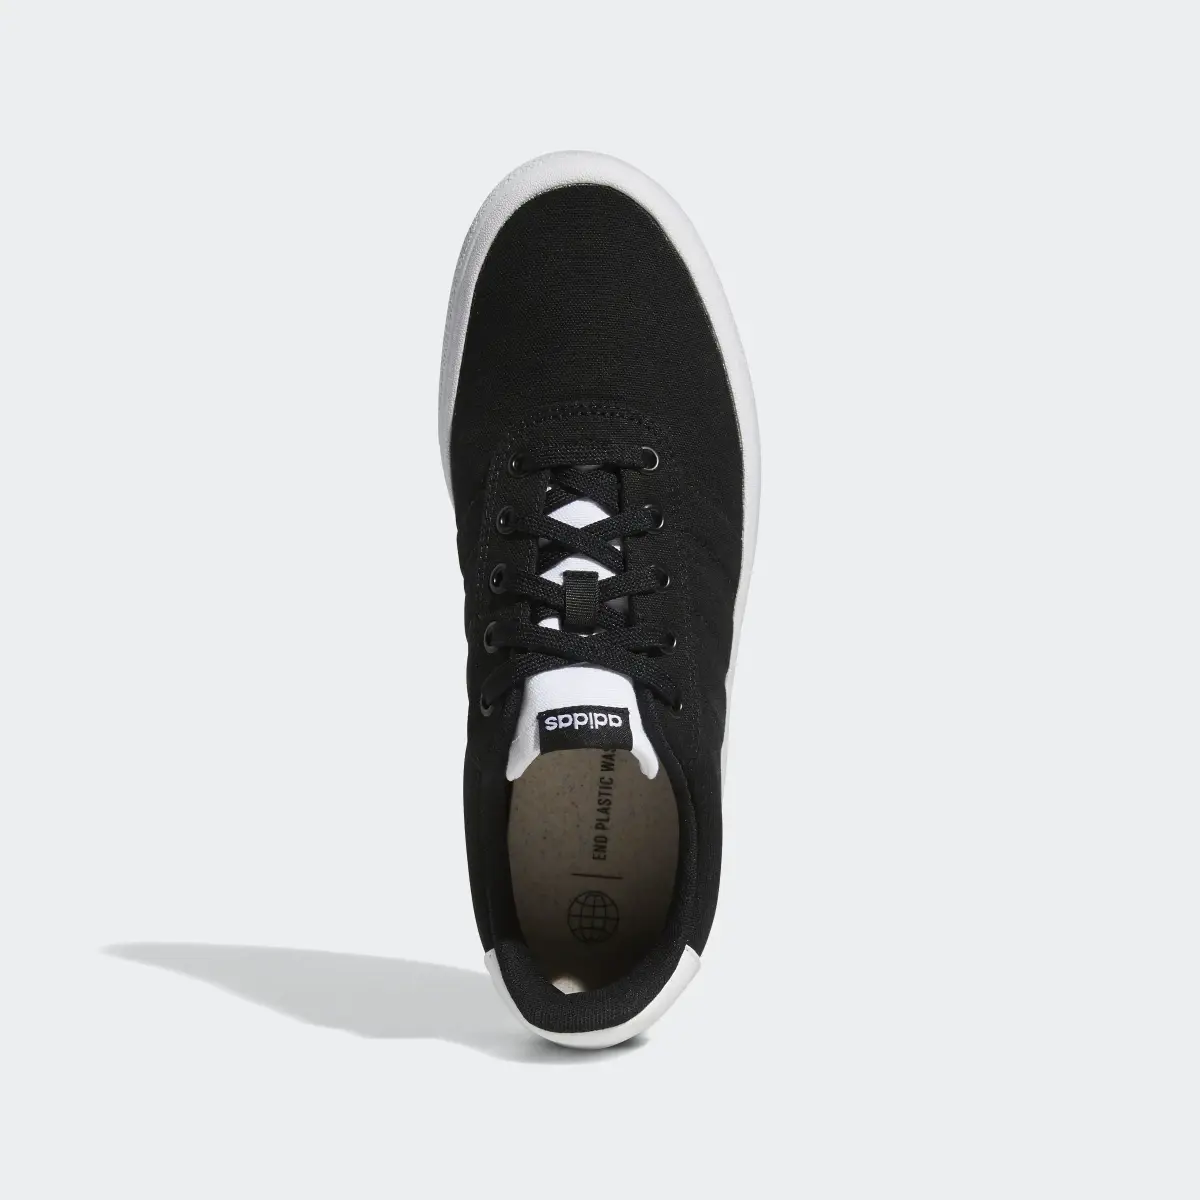 Adidas Vulc Raid3r Skateboarding Shoes. 3